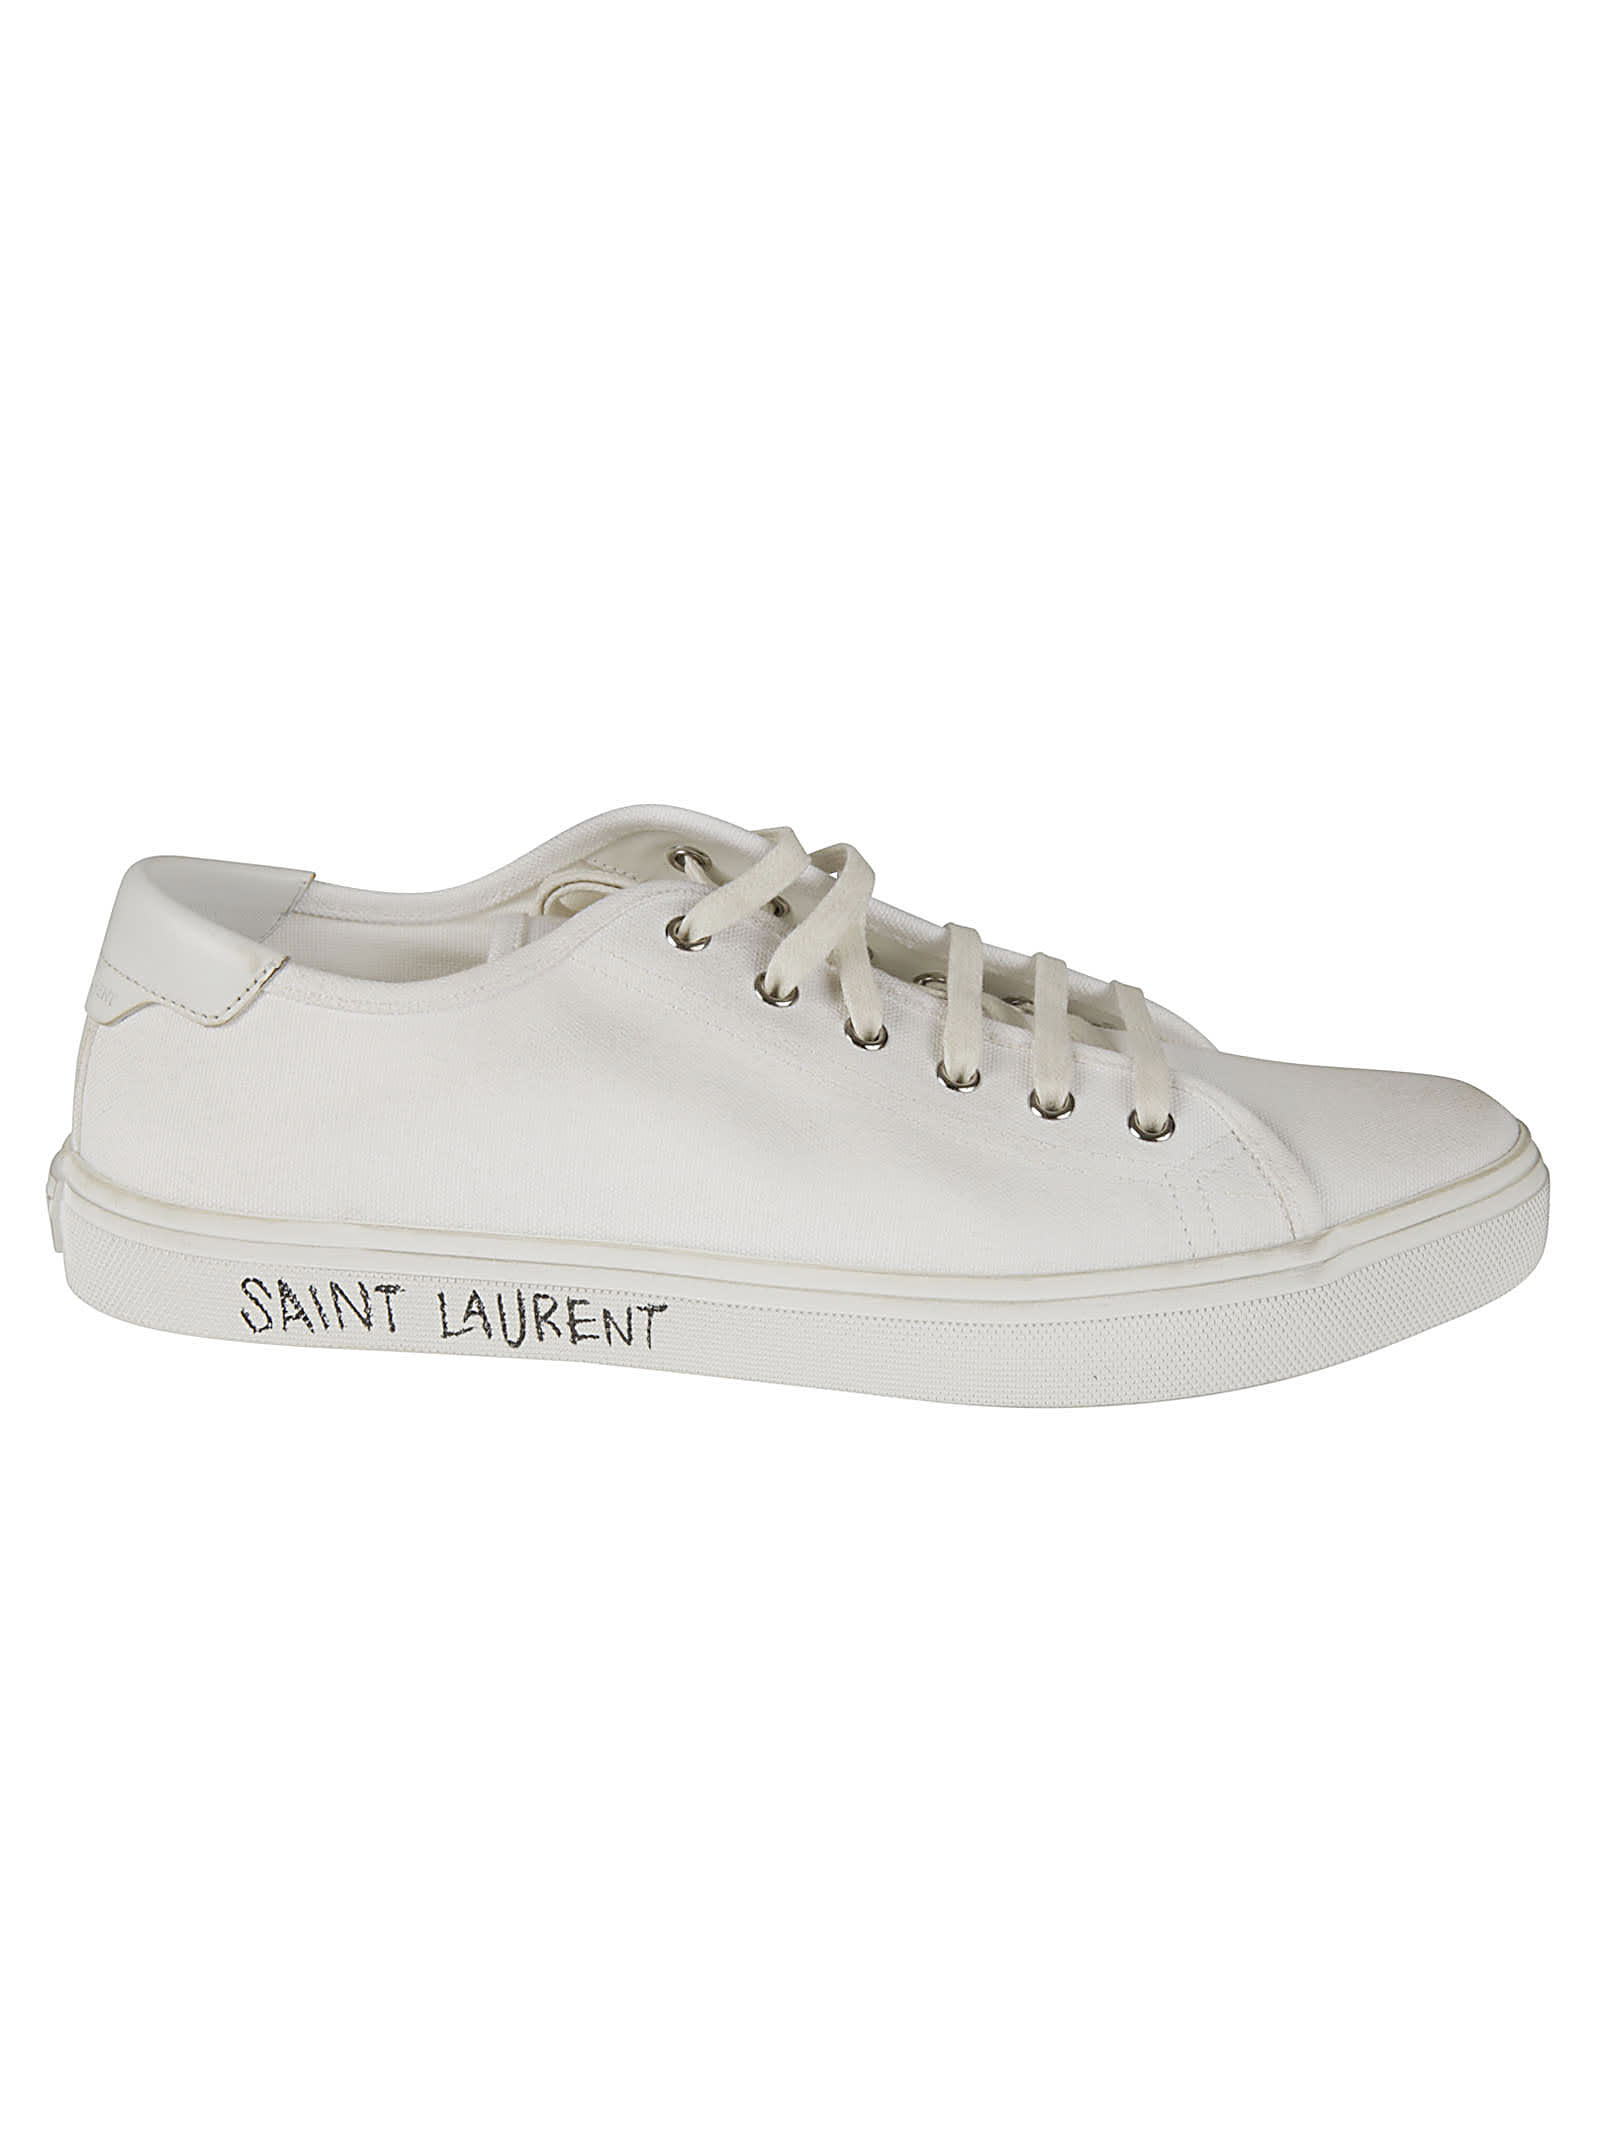 Saint Laurent Malibu Sneakers